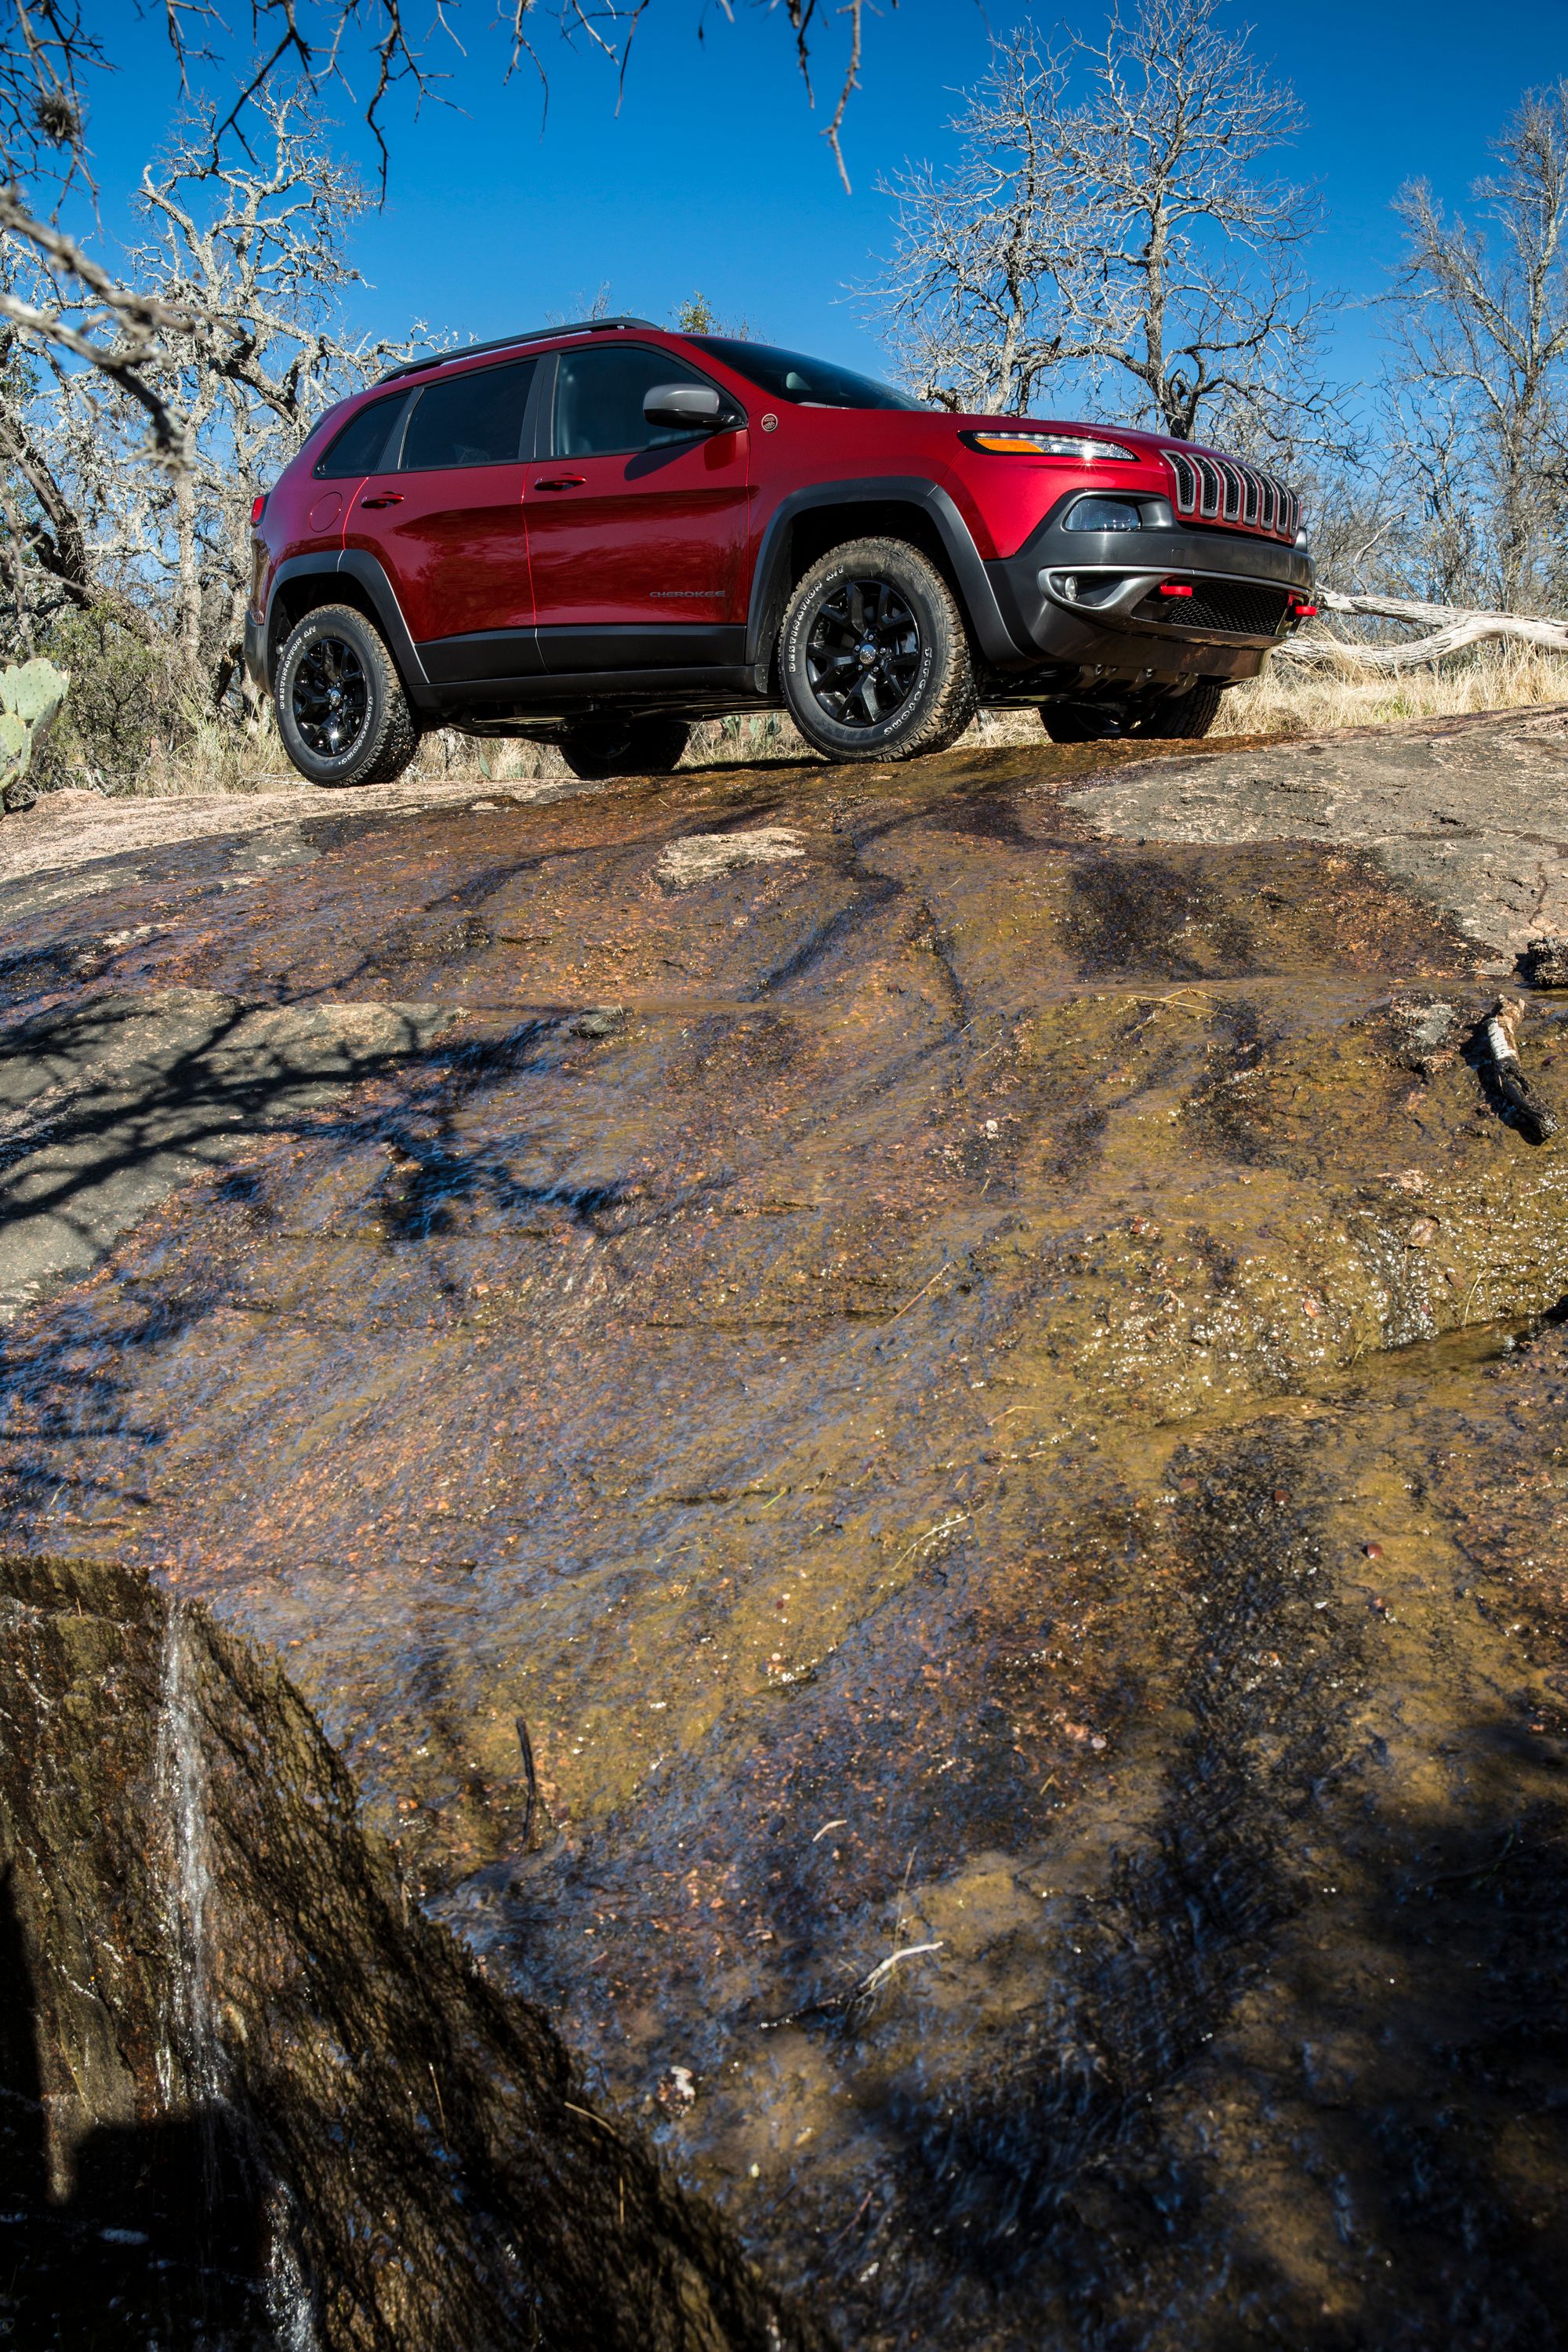 2014 Jeep Cherokee